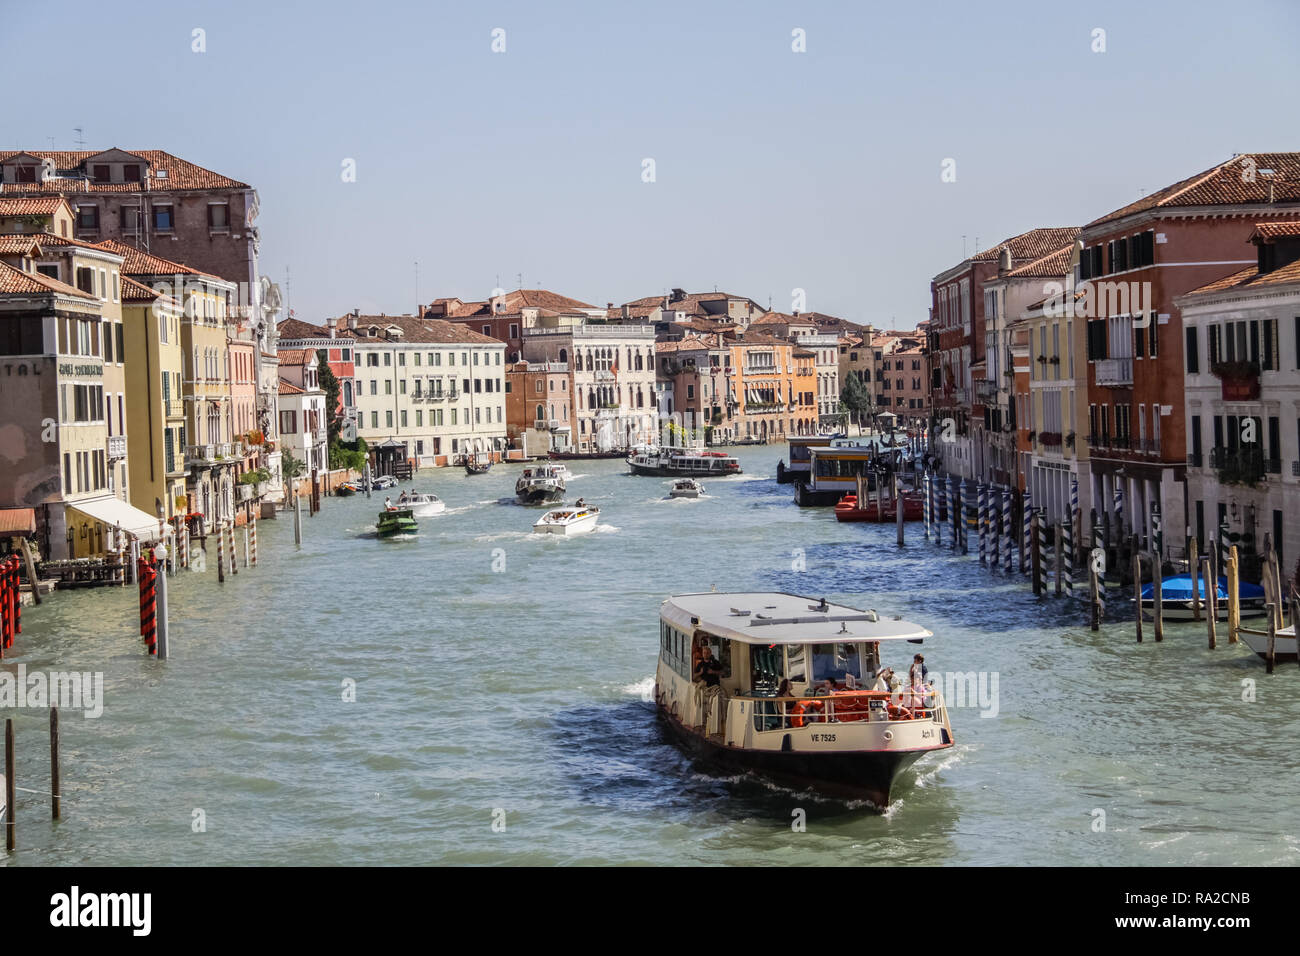 Venise, Italie - 29 mai 2016 : Venise en Italie, l'architecture de la ville, Venise est une destination touristique populaire de l'Europe. Banque D'Images